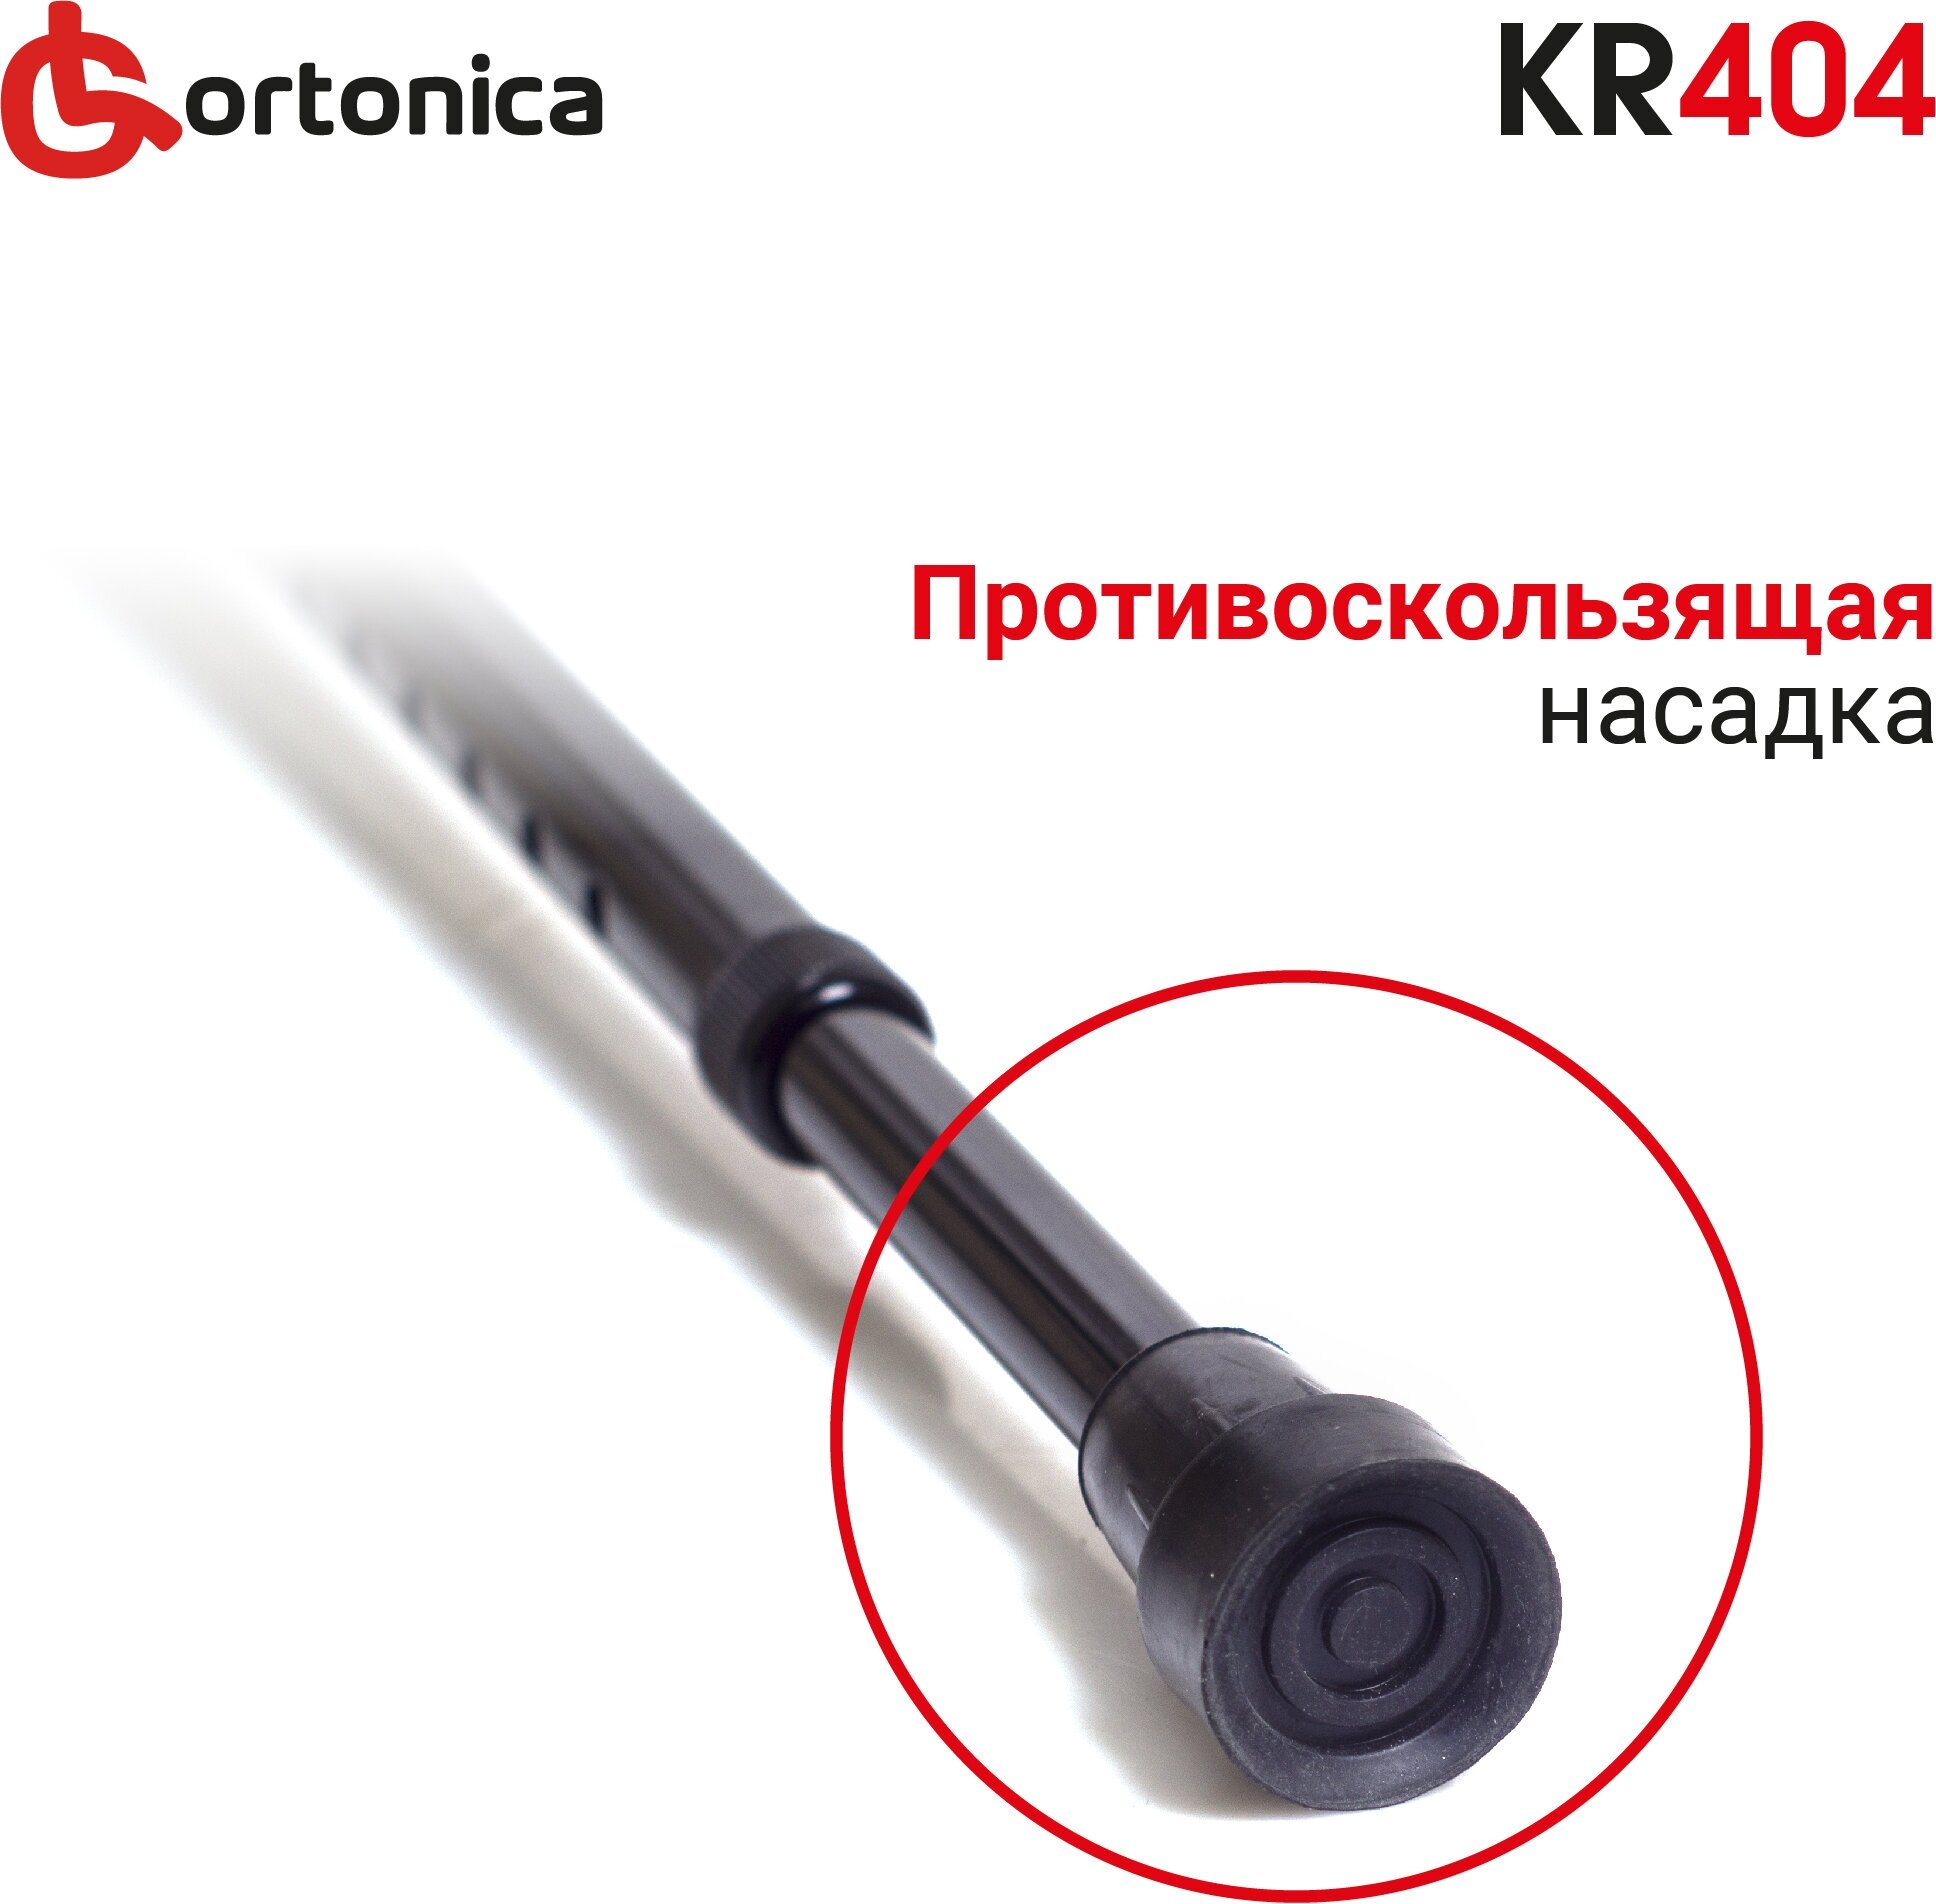 Костыль локтевой Ortonica KR 404 без УПС алюминиевый регулируемый по высоте черный до 110 кг